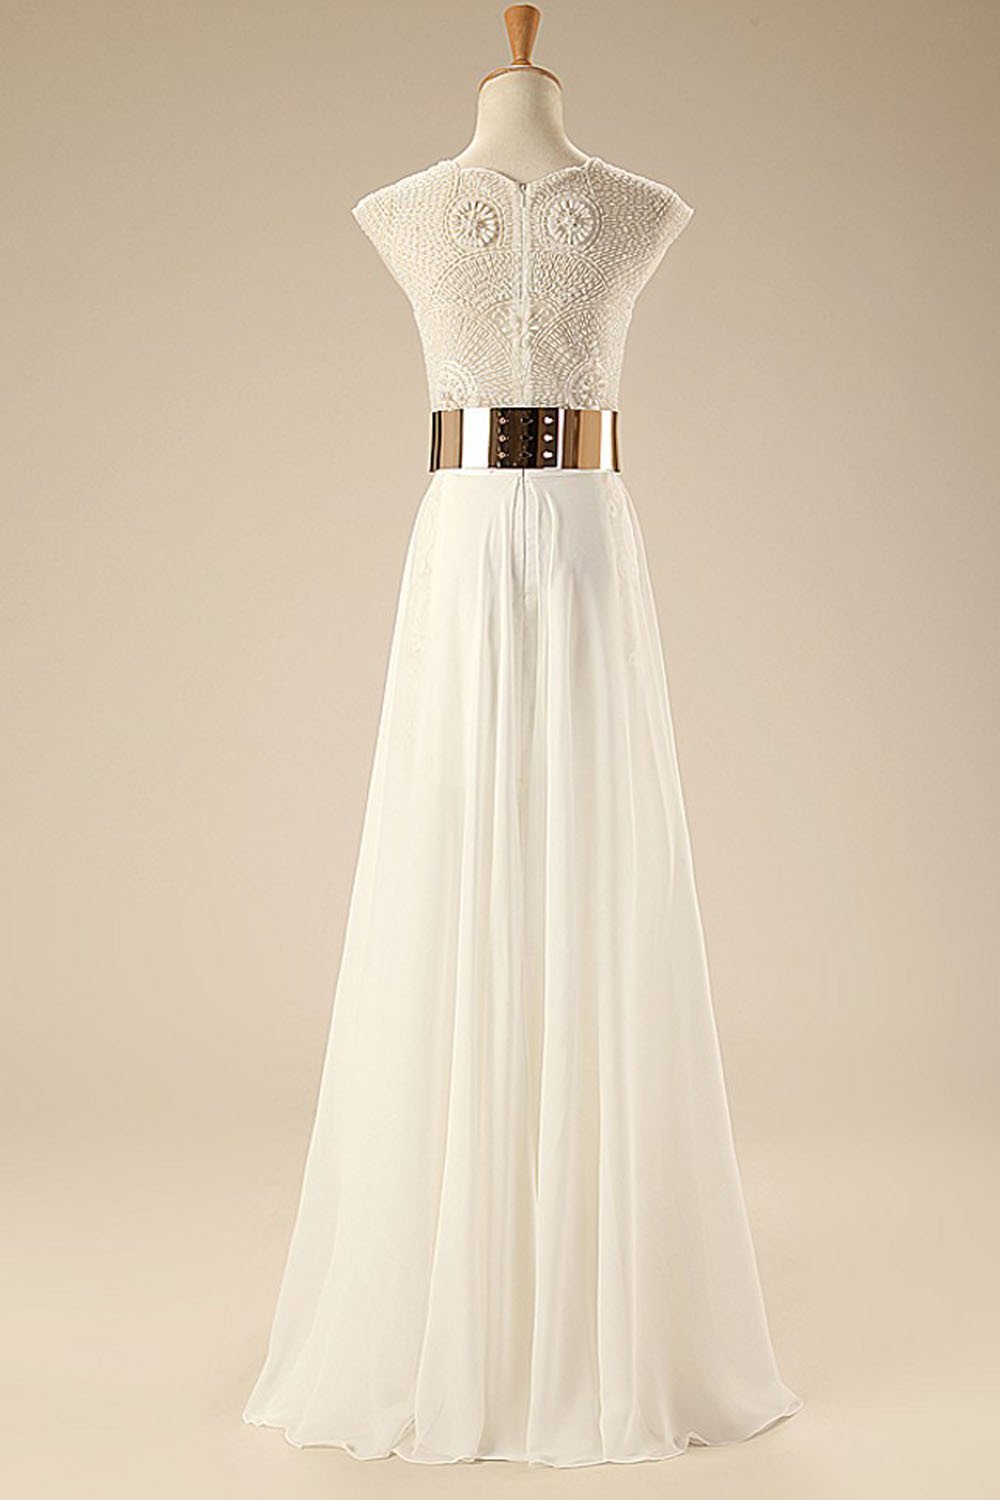 Deep V Neck Cap Sleeves White Chiffon Gold Belt Summer Beach Wedding Dress WD0106